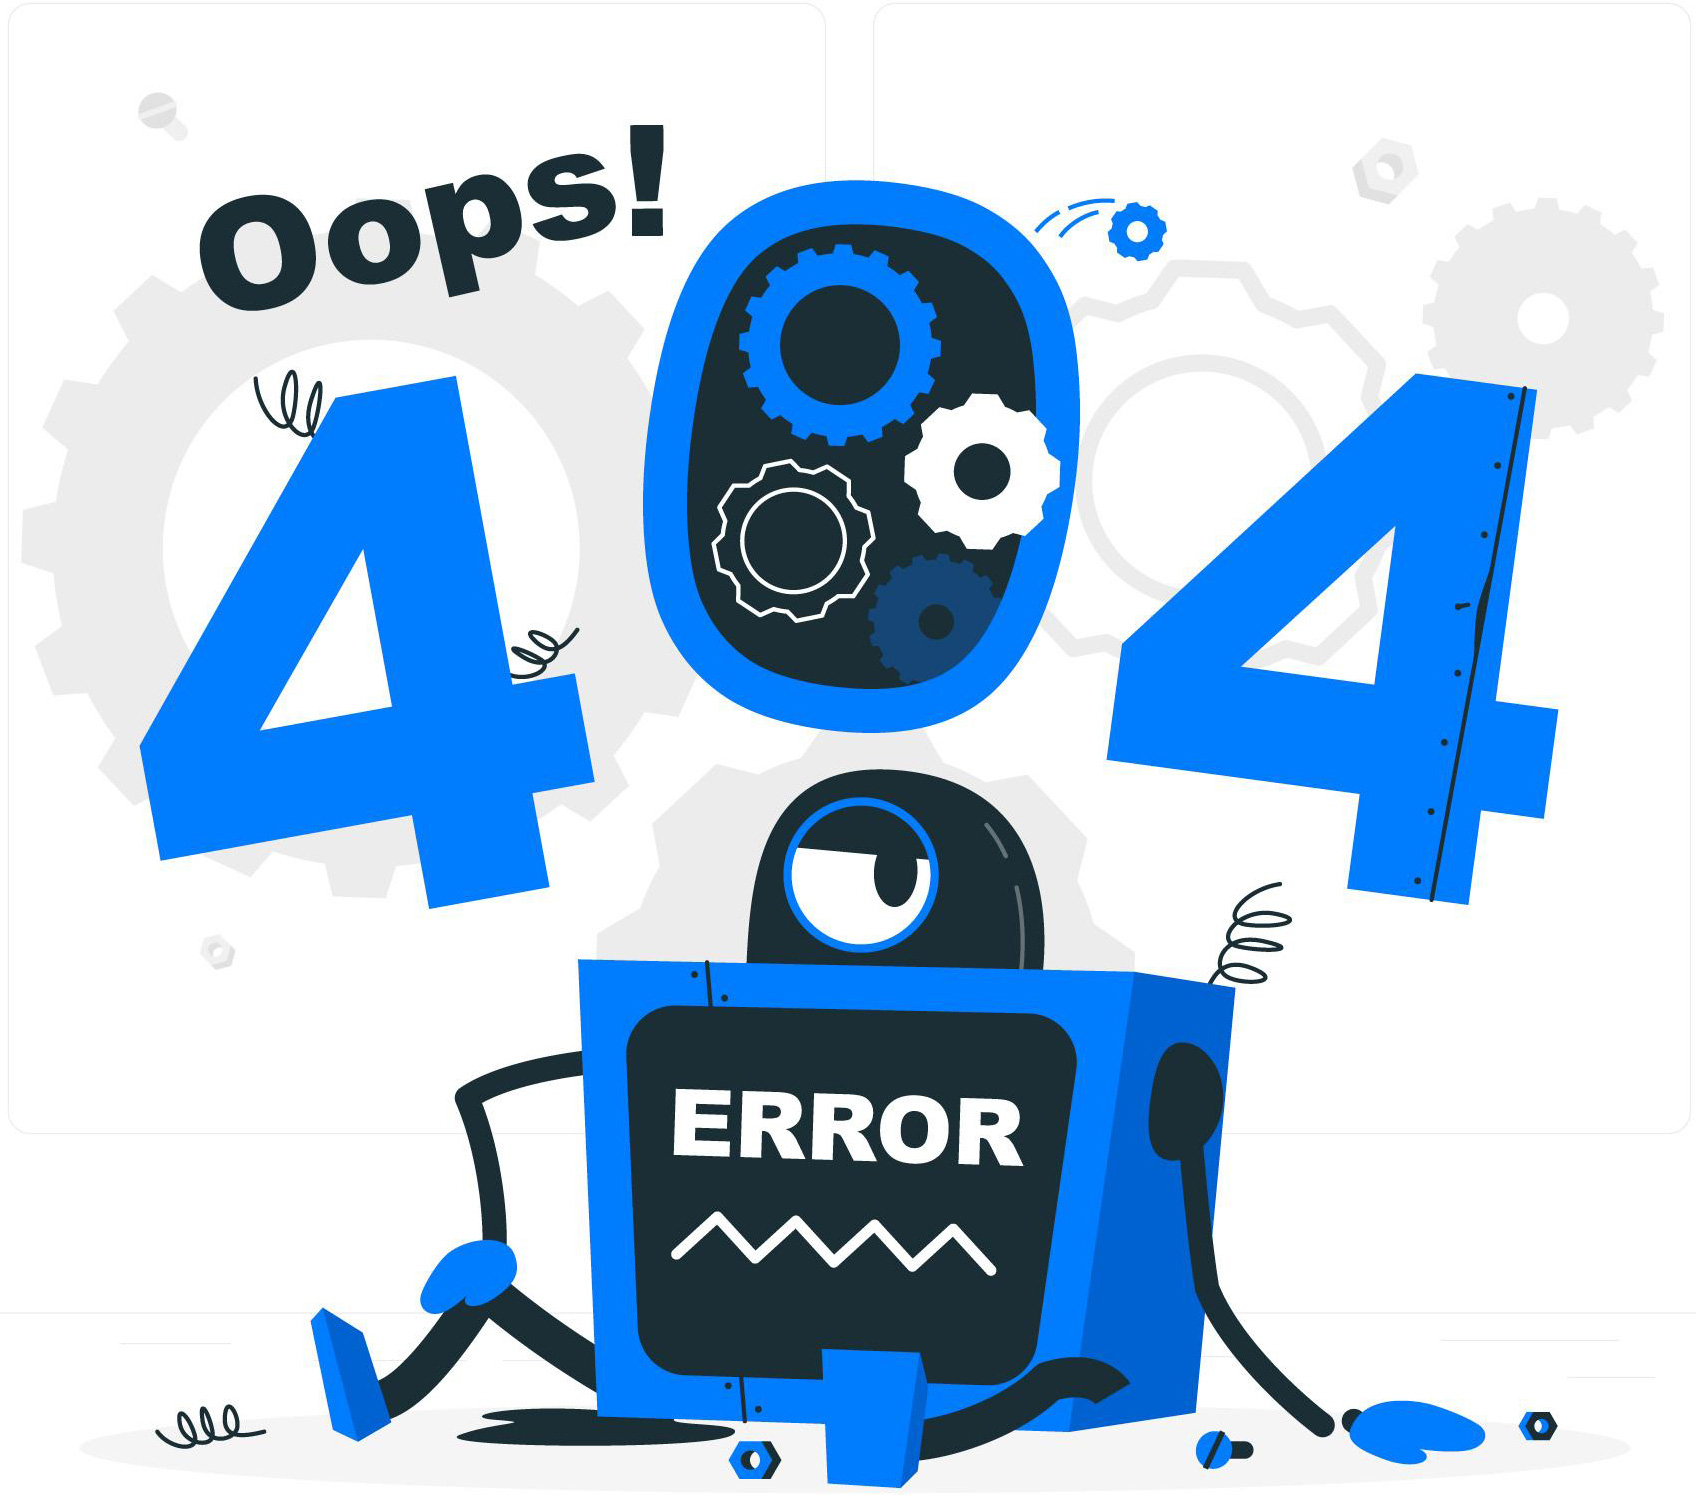 404 Hatası